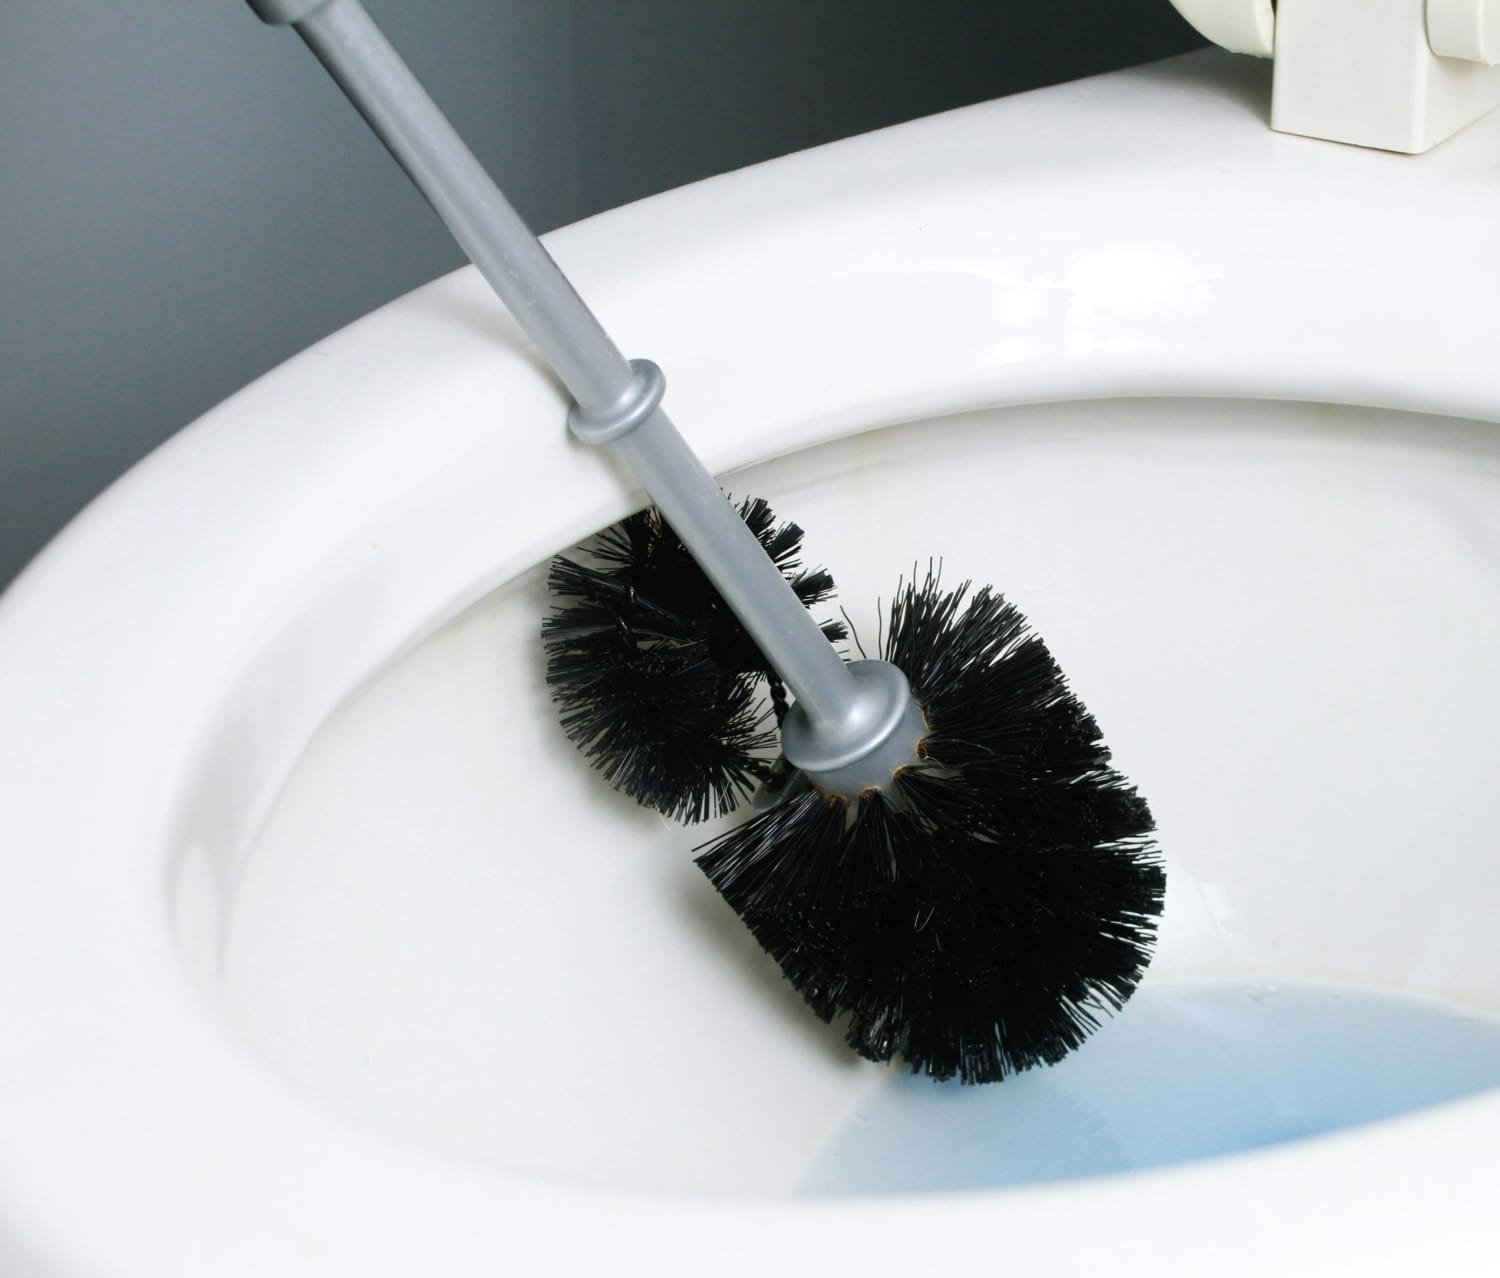 تمیز کردن توالت فرنگی - از بین بردن مگس فاضلاب